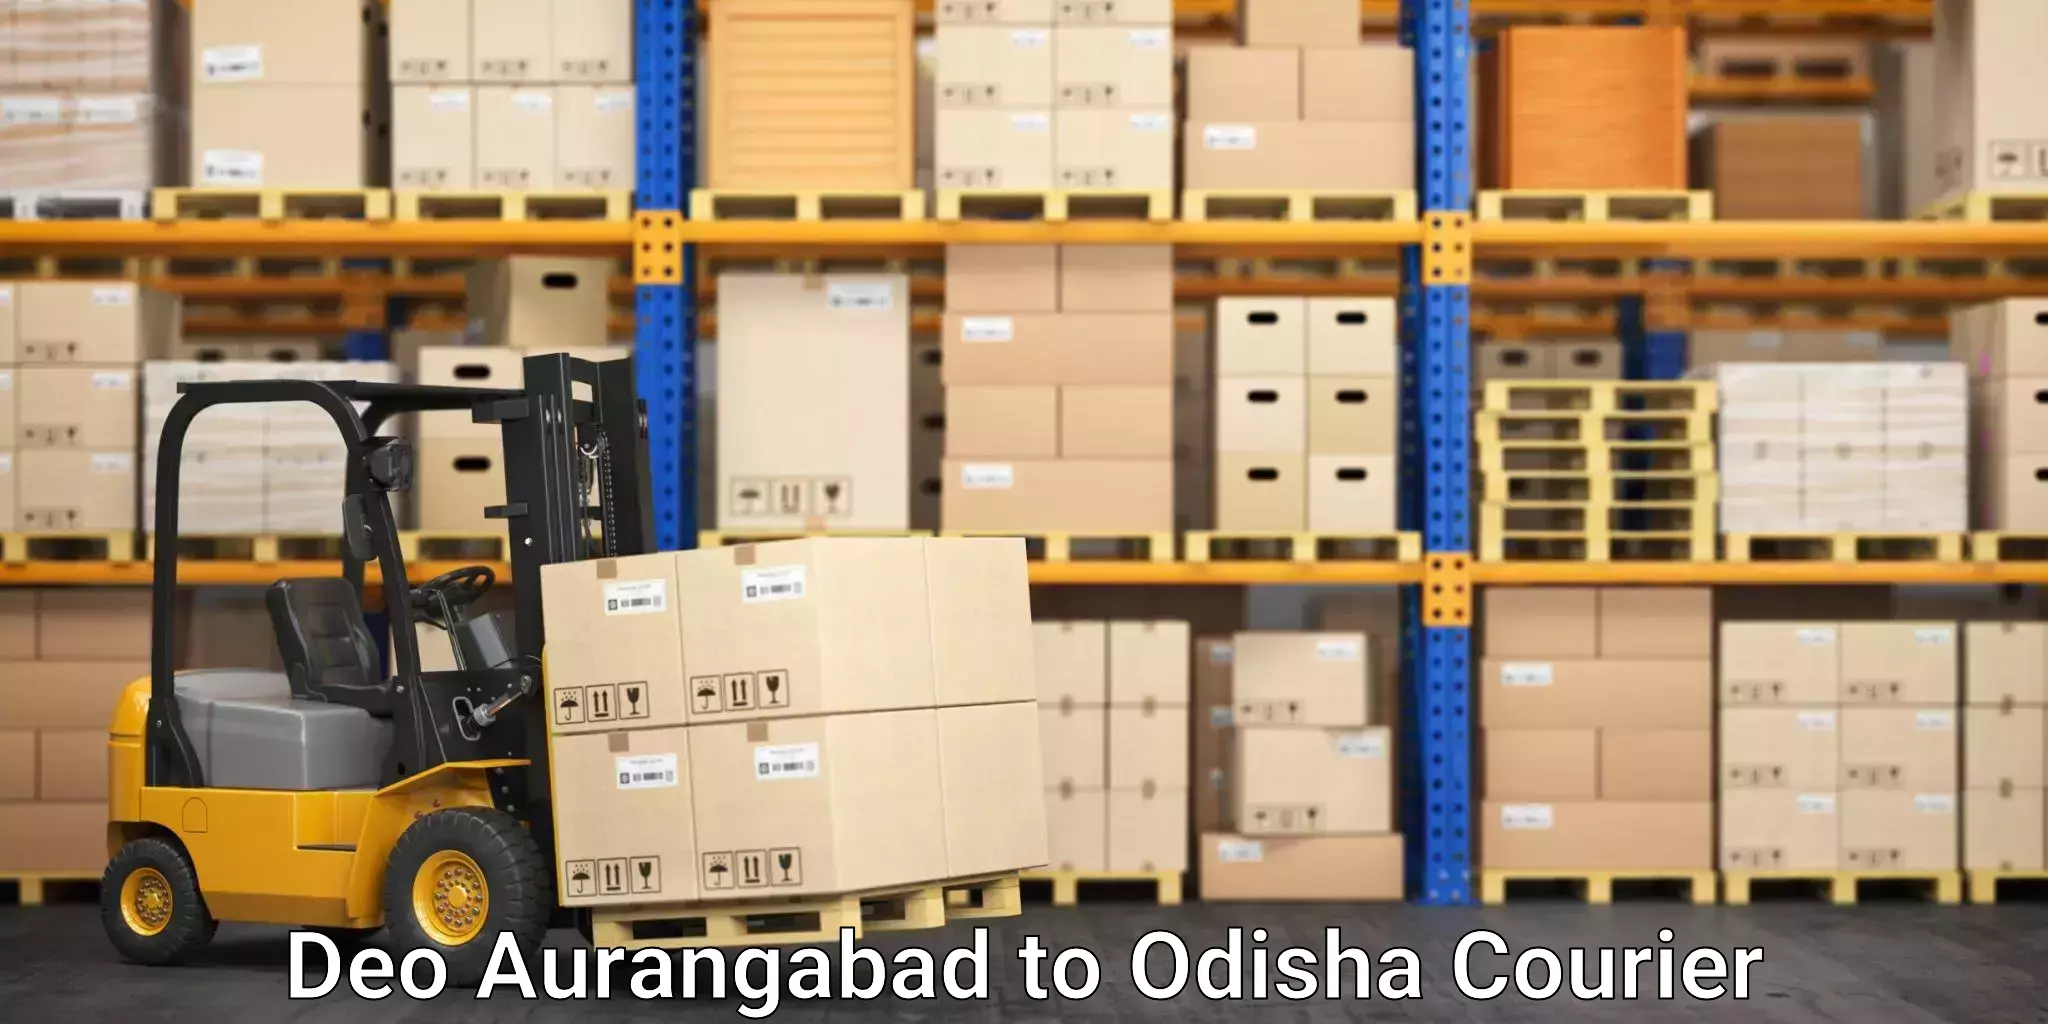 Stress-free household moving Deo Aurangabad to Odisha